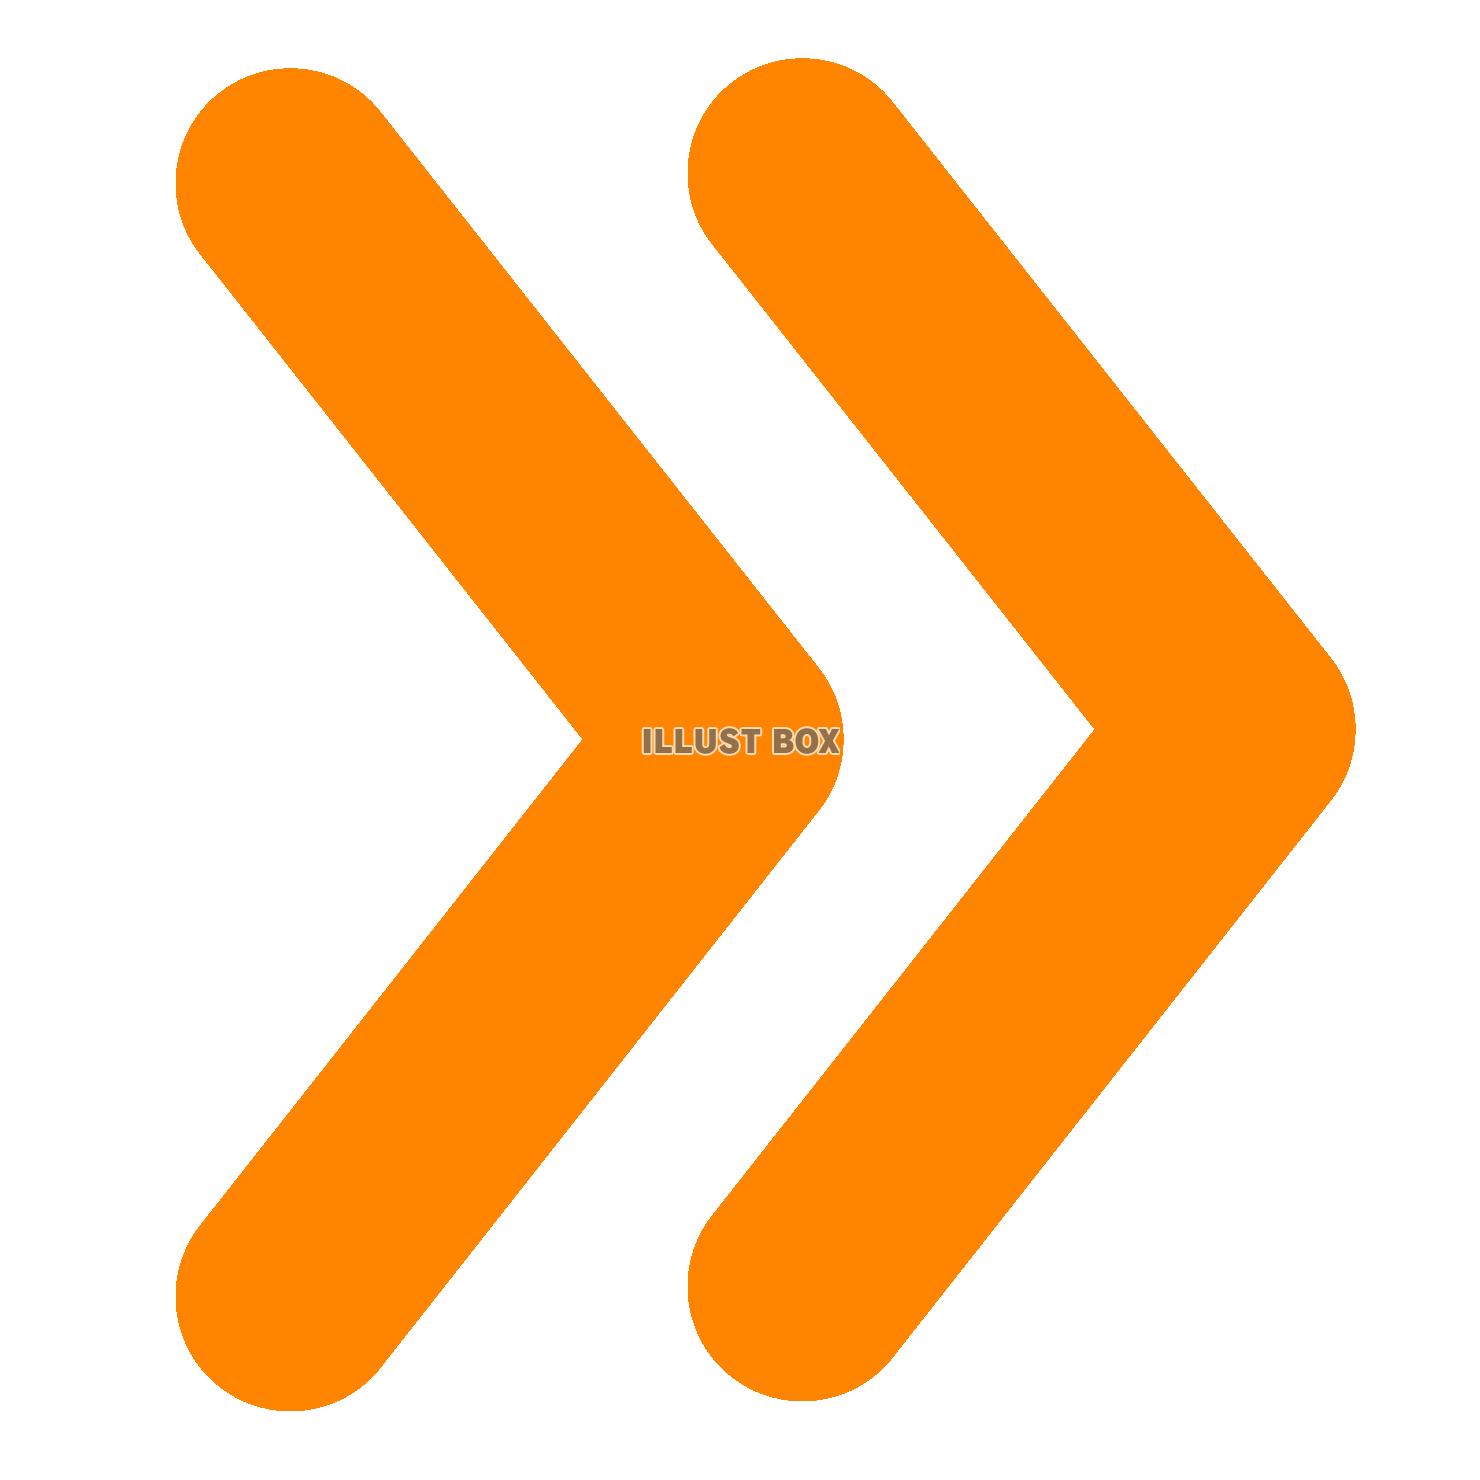 シンプルなオレンジの二本線の矢印